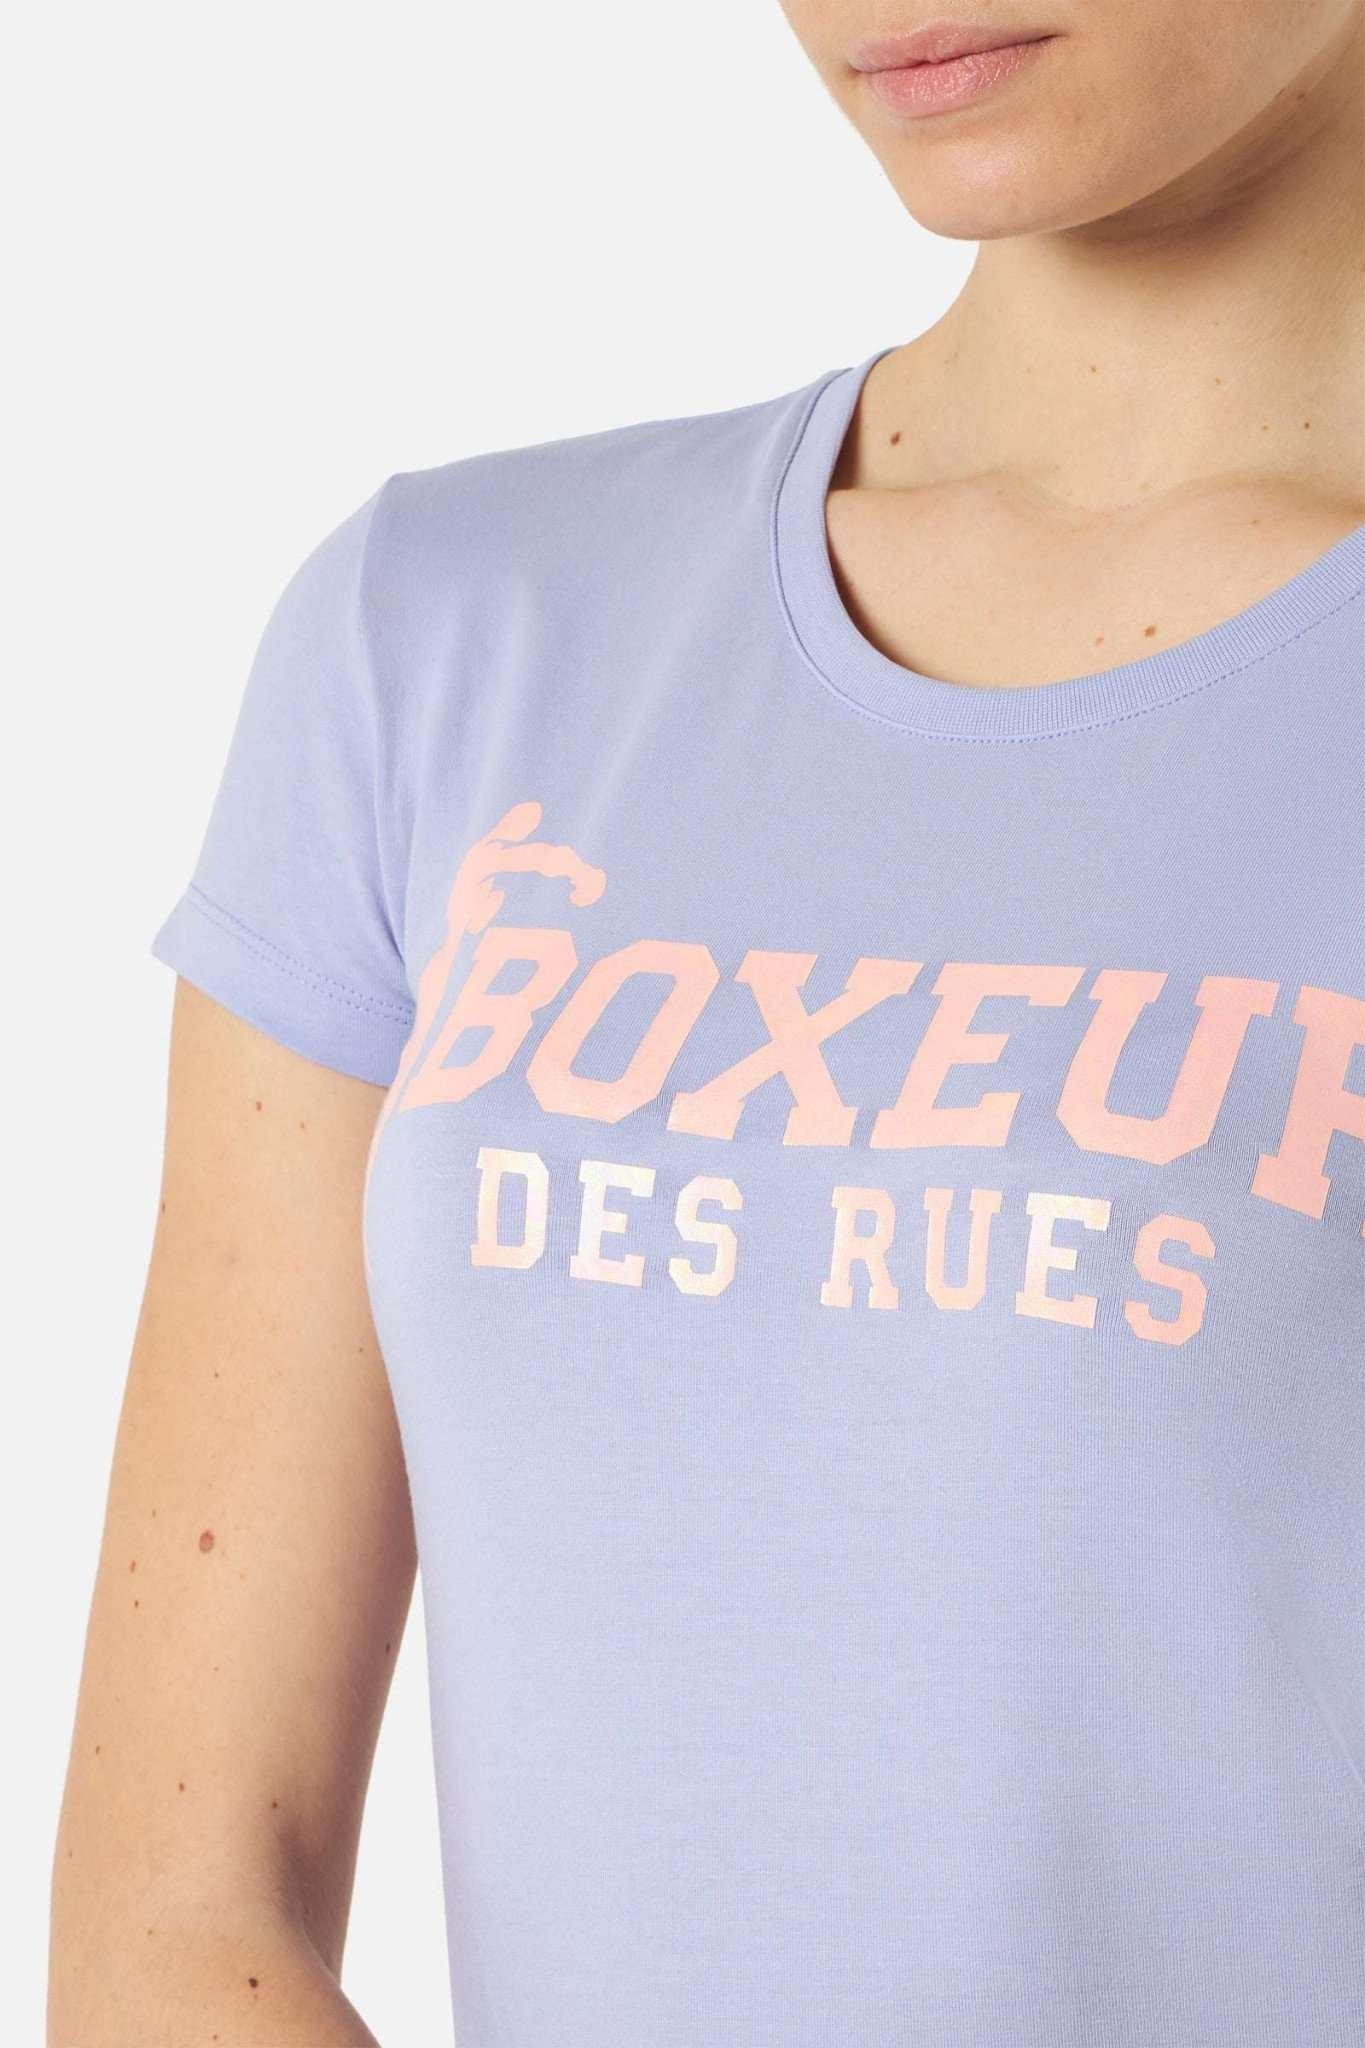 BOXEUR DES RUES  Basic T-Shirt With Front Logo 